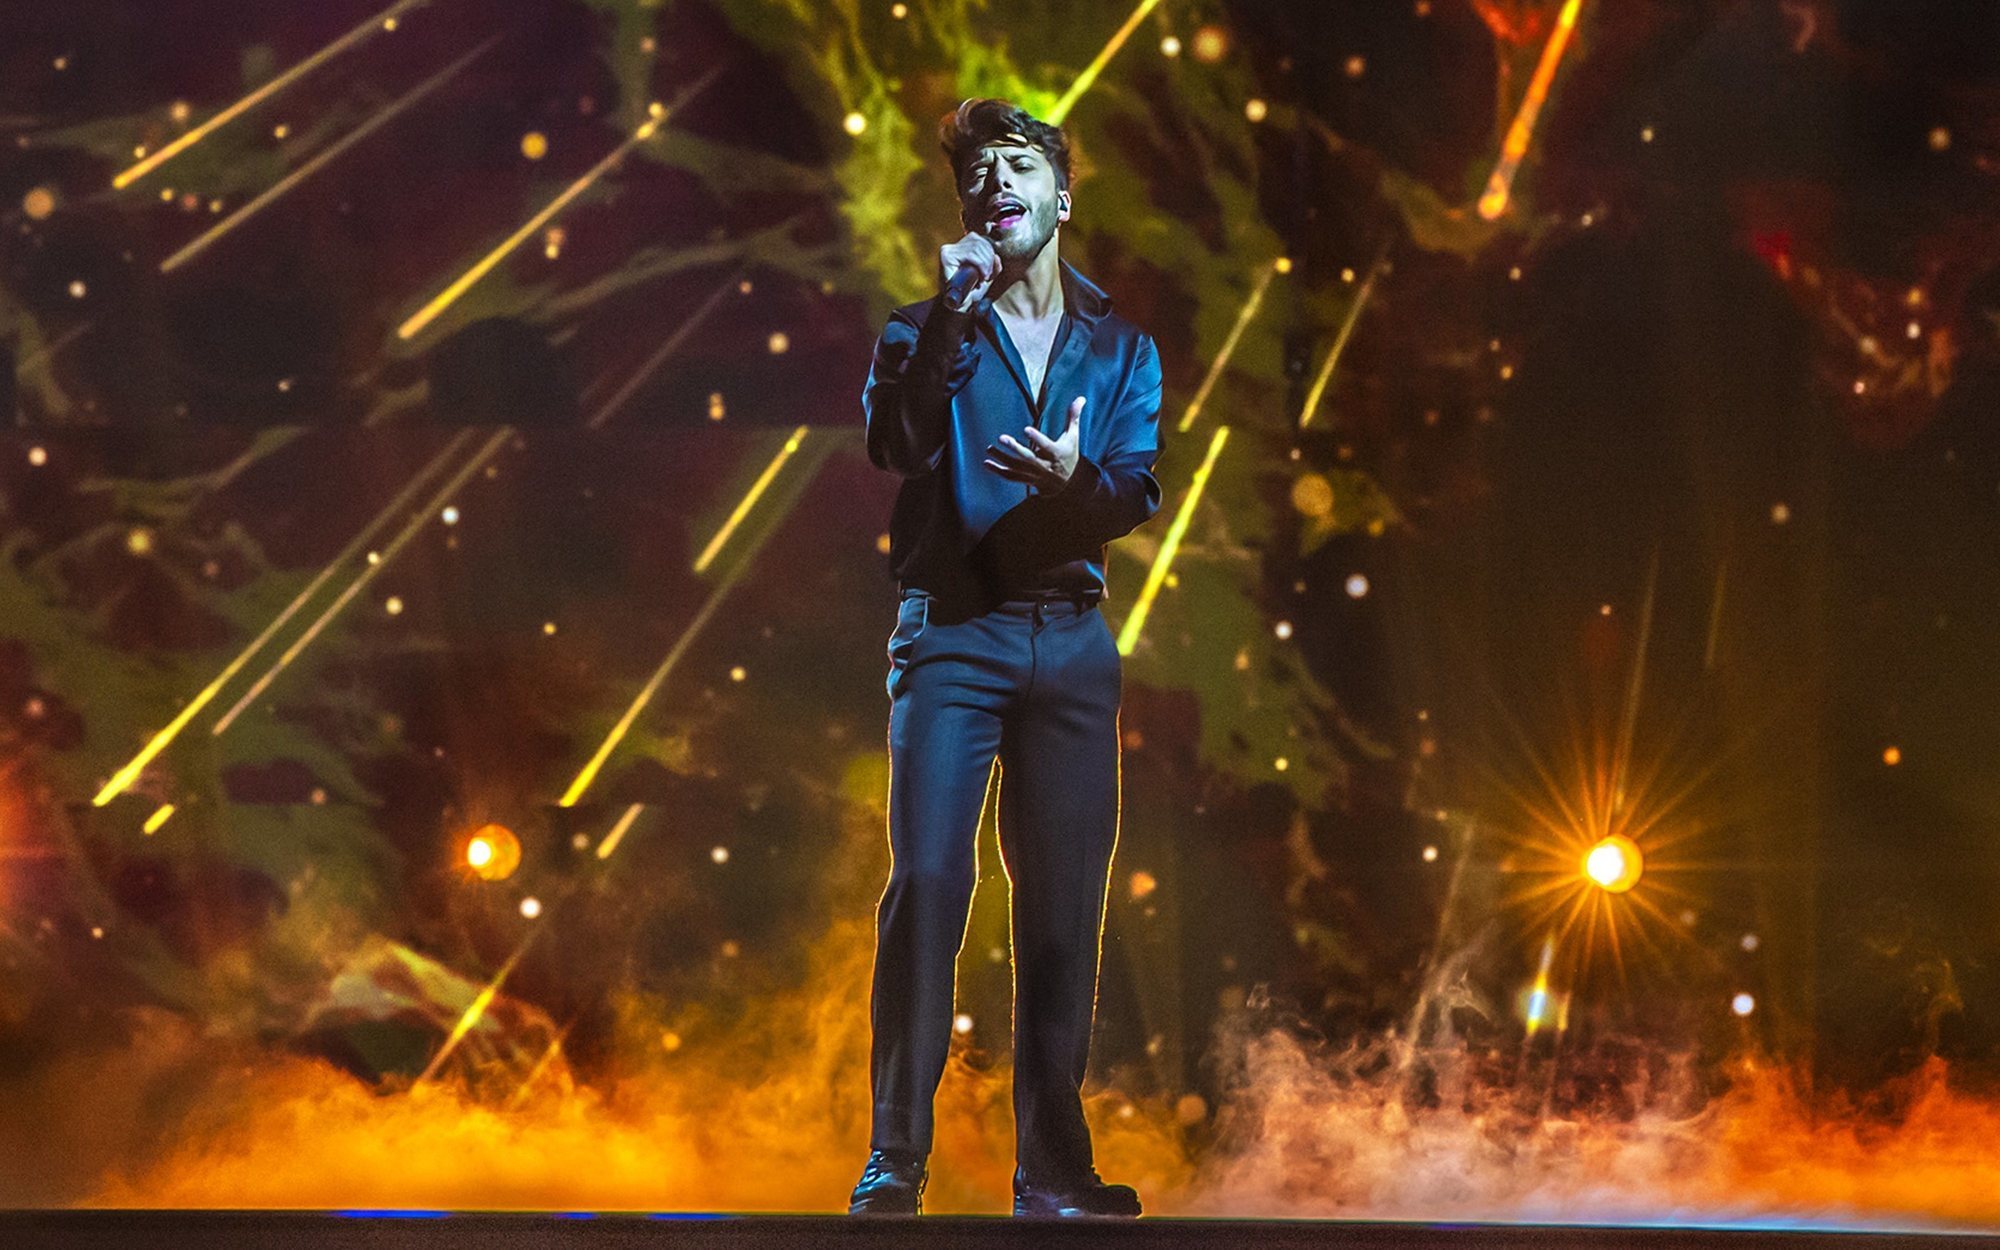 Eurovisión 2021: España, puesto 24 con Blas Cantó y "Voy a quedarme", tras los cero puntos del público